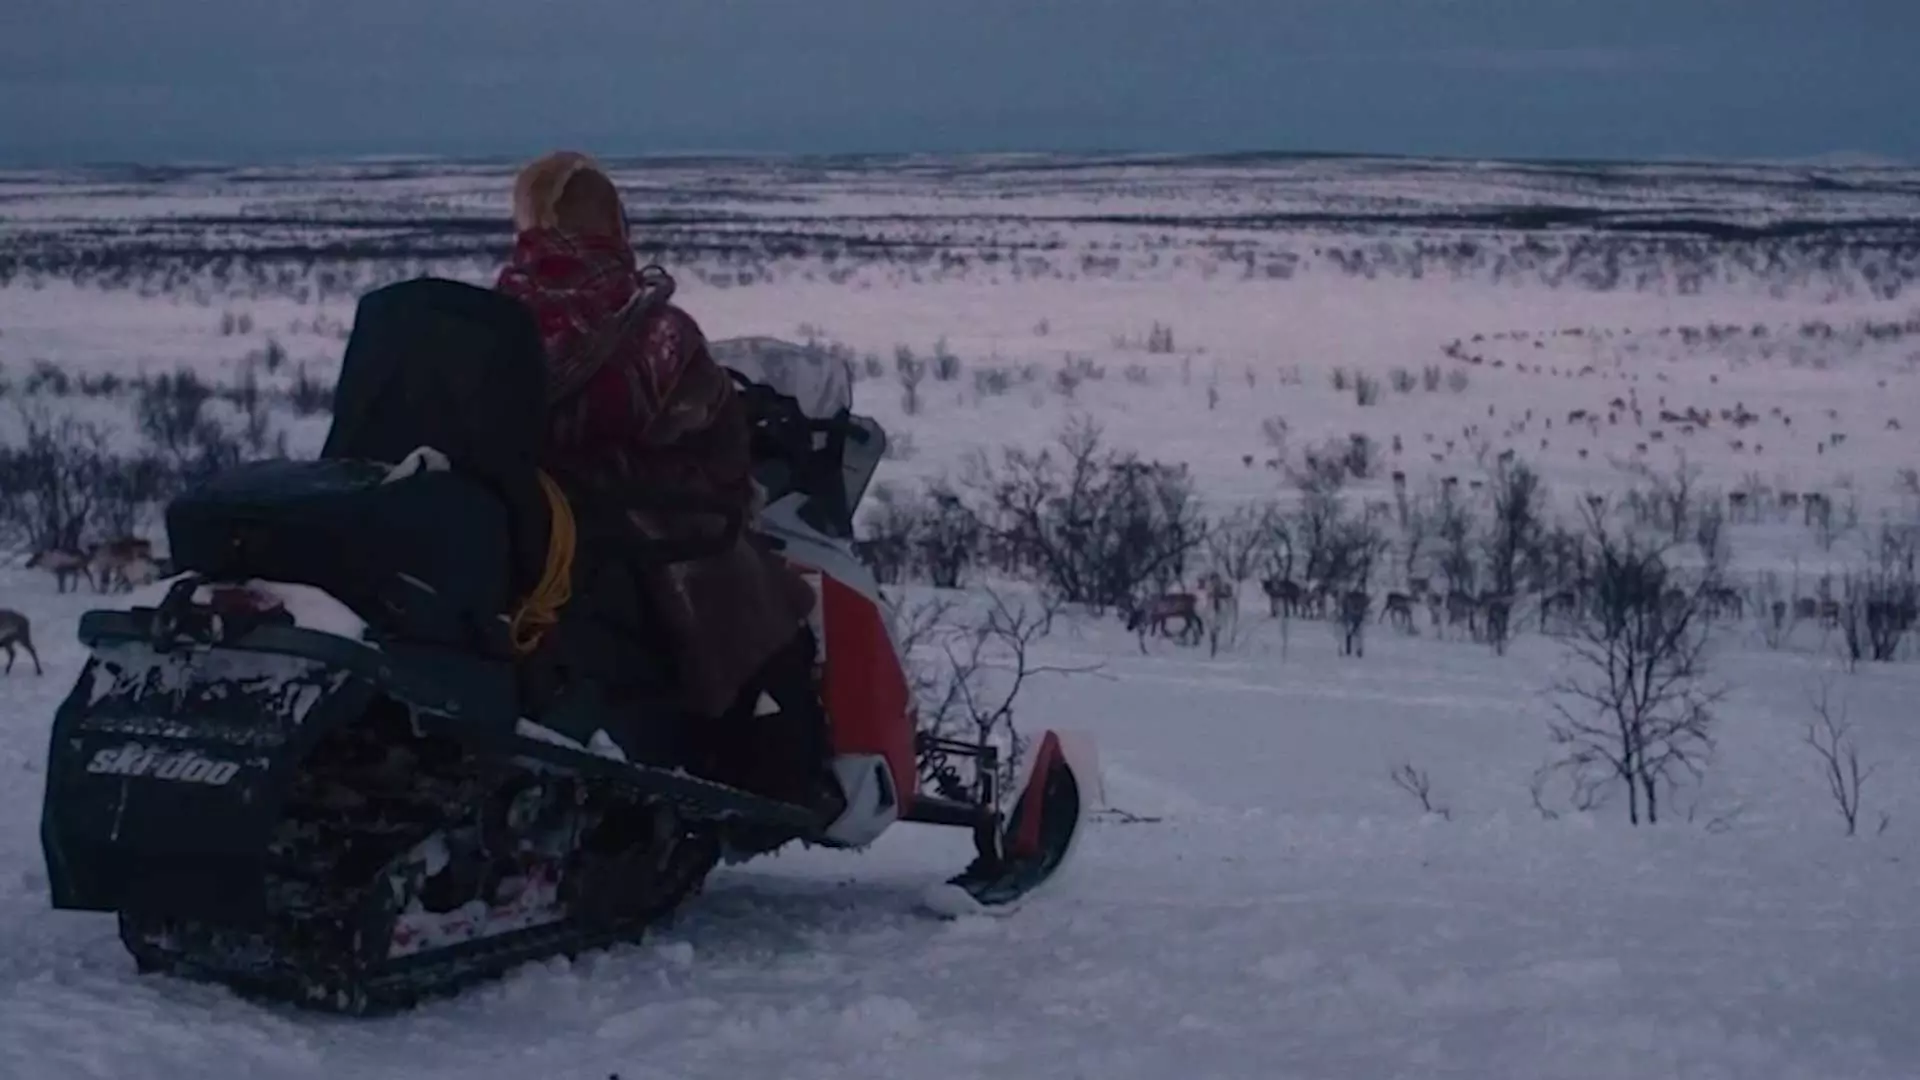 Totalbilde. Vi ser en person ikledd tradisjonelle samiske plagg sittende på en snøscooter bakfra. Personen ser utover et snødekket landskap. Det kan se ut som at vi ser en reinsdyrflokk langt borte. Foto.